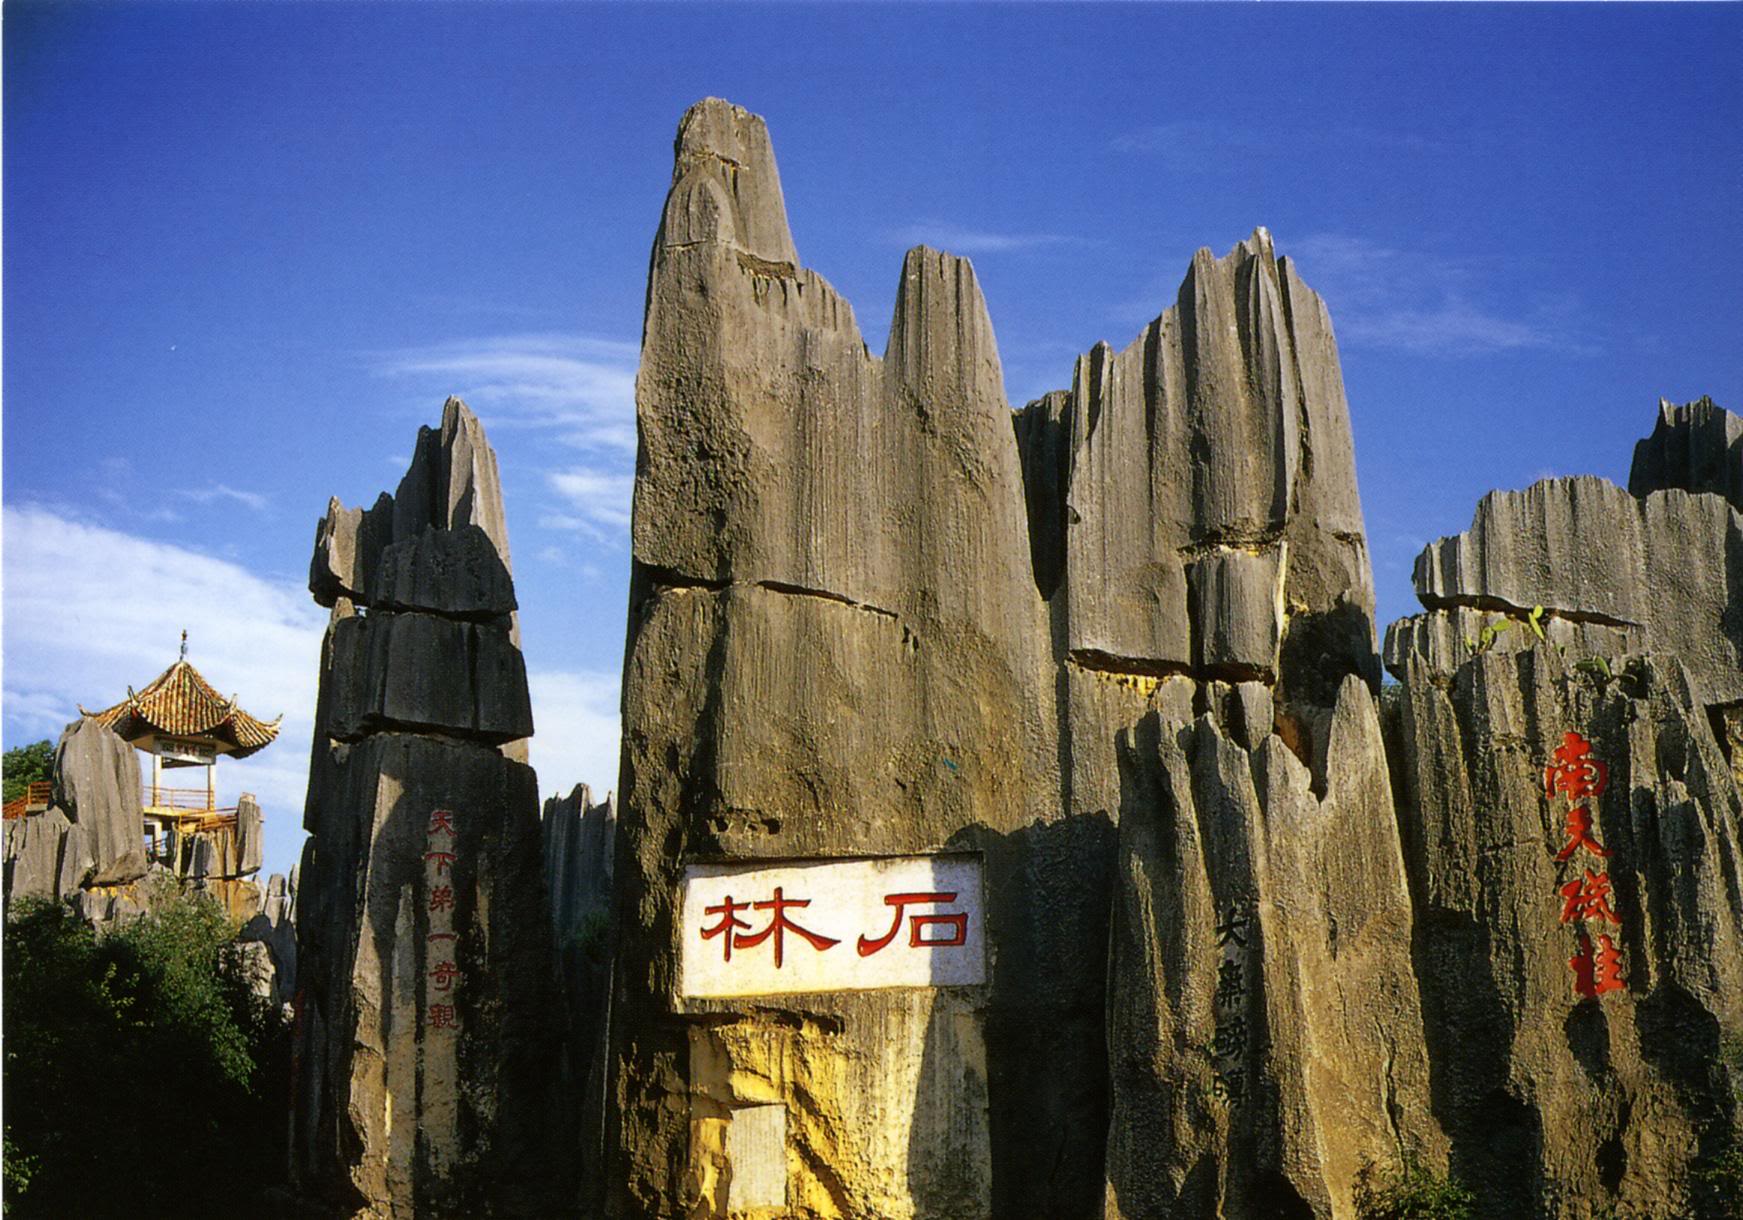 ทัวร์คุนหมิง – ป่าหิน – ถ้ำจิ่วเชียง – ประตูมังกร 4D 3N บินตรงเชียงใหม่ (MU) ราคา 17,900 บาท (9 - 12 มิ.ย. 54) รูปที่ 1